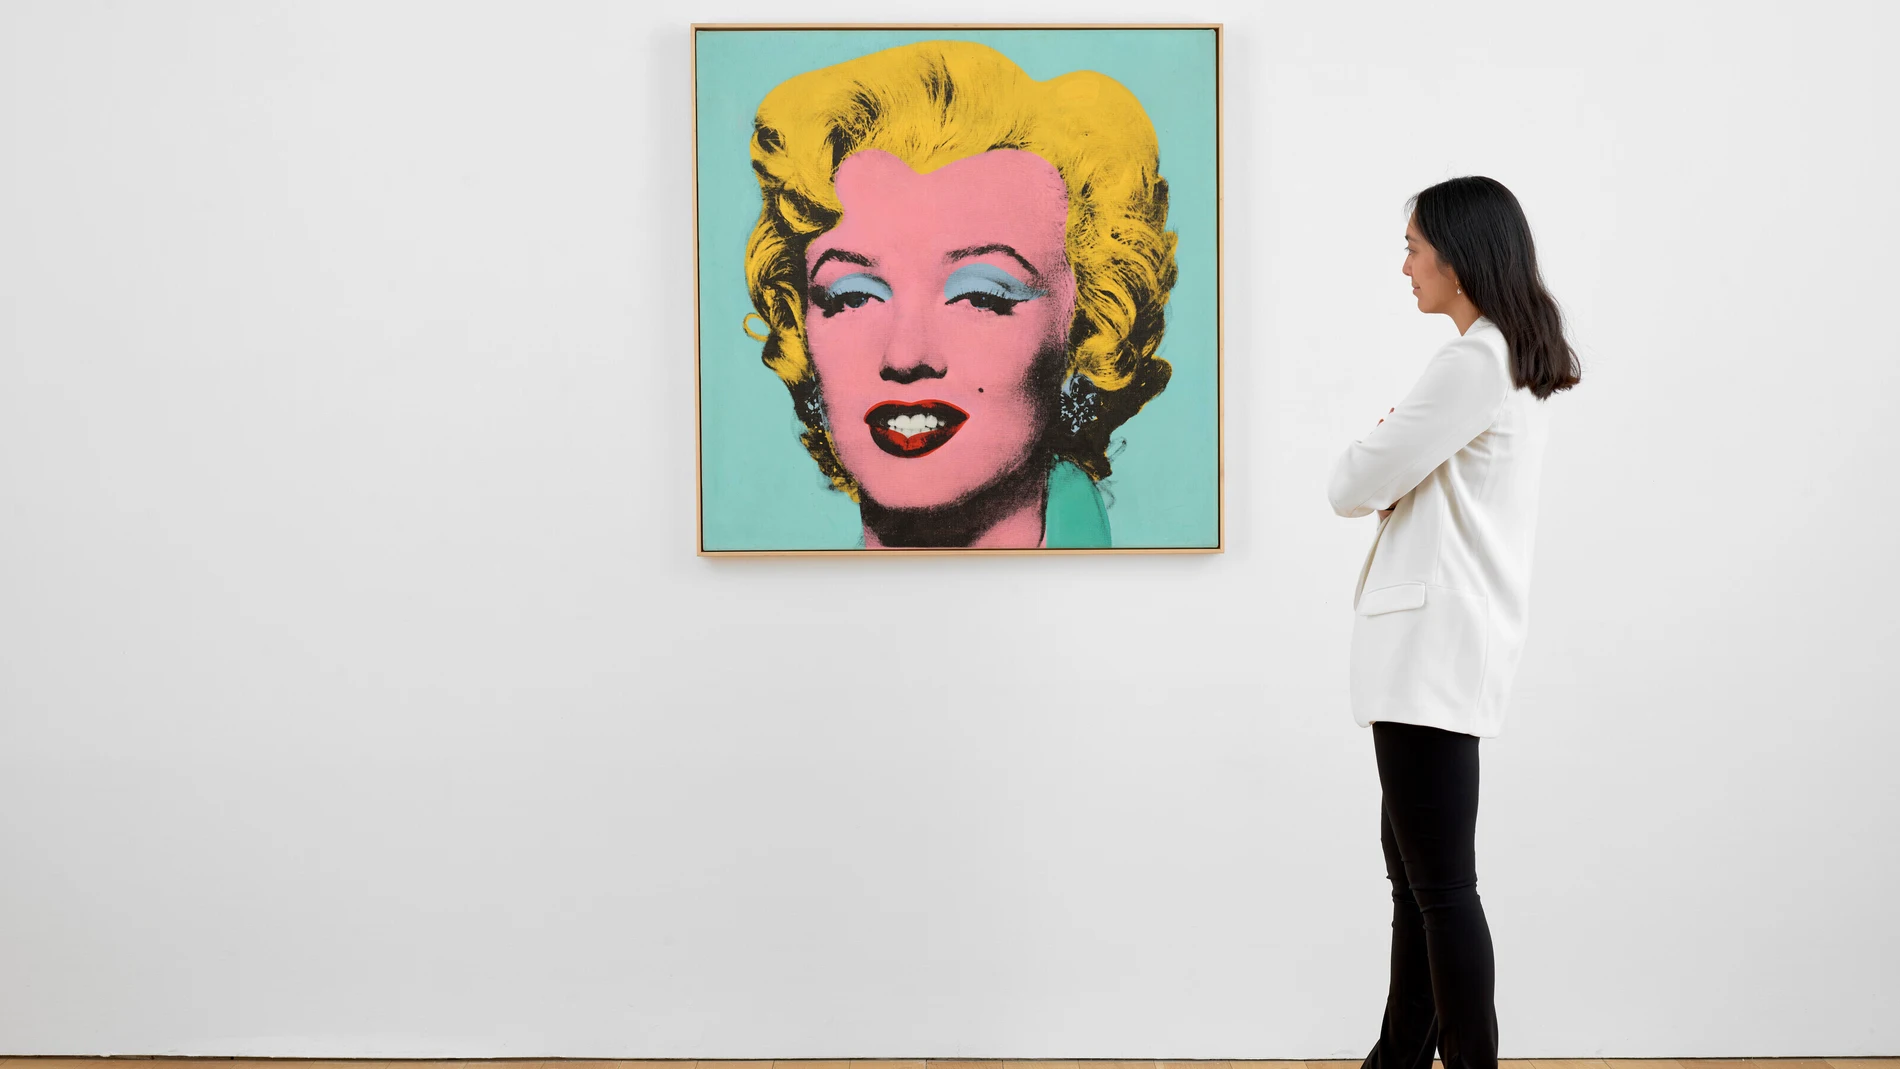 Una mujer observa la obra "Shot Sage Blue Marilyn", un llamativo retrato ejecutado por el artista estadounidense Andy Warhol en 1964 que hoy se pone a la venta